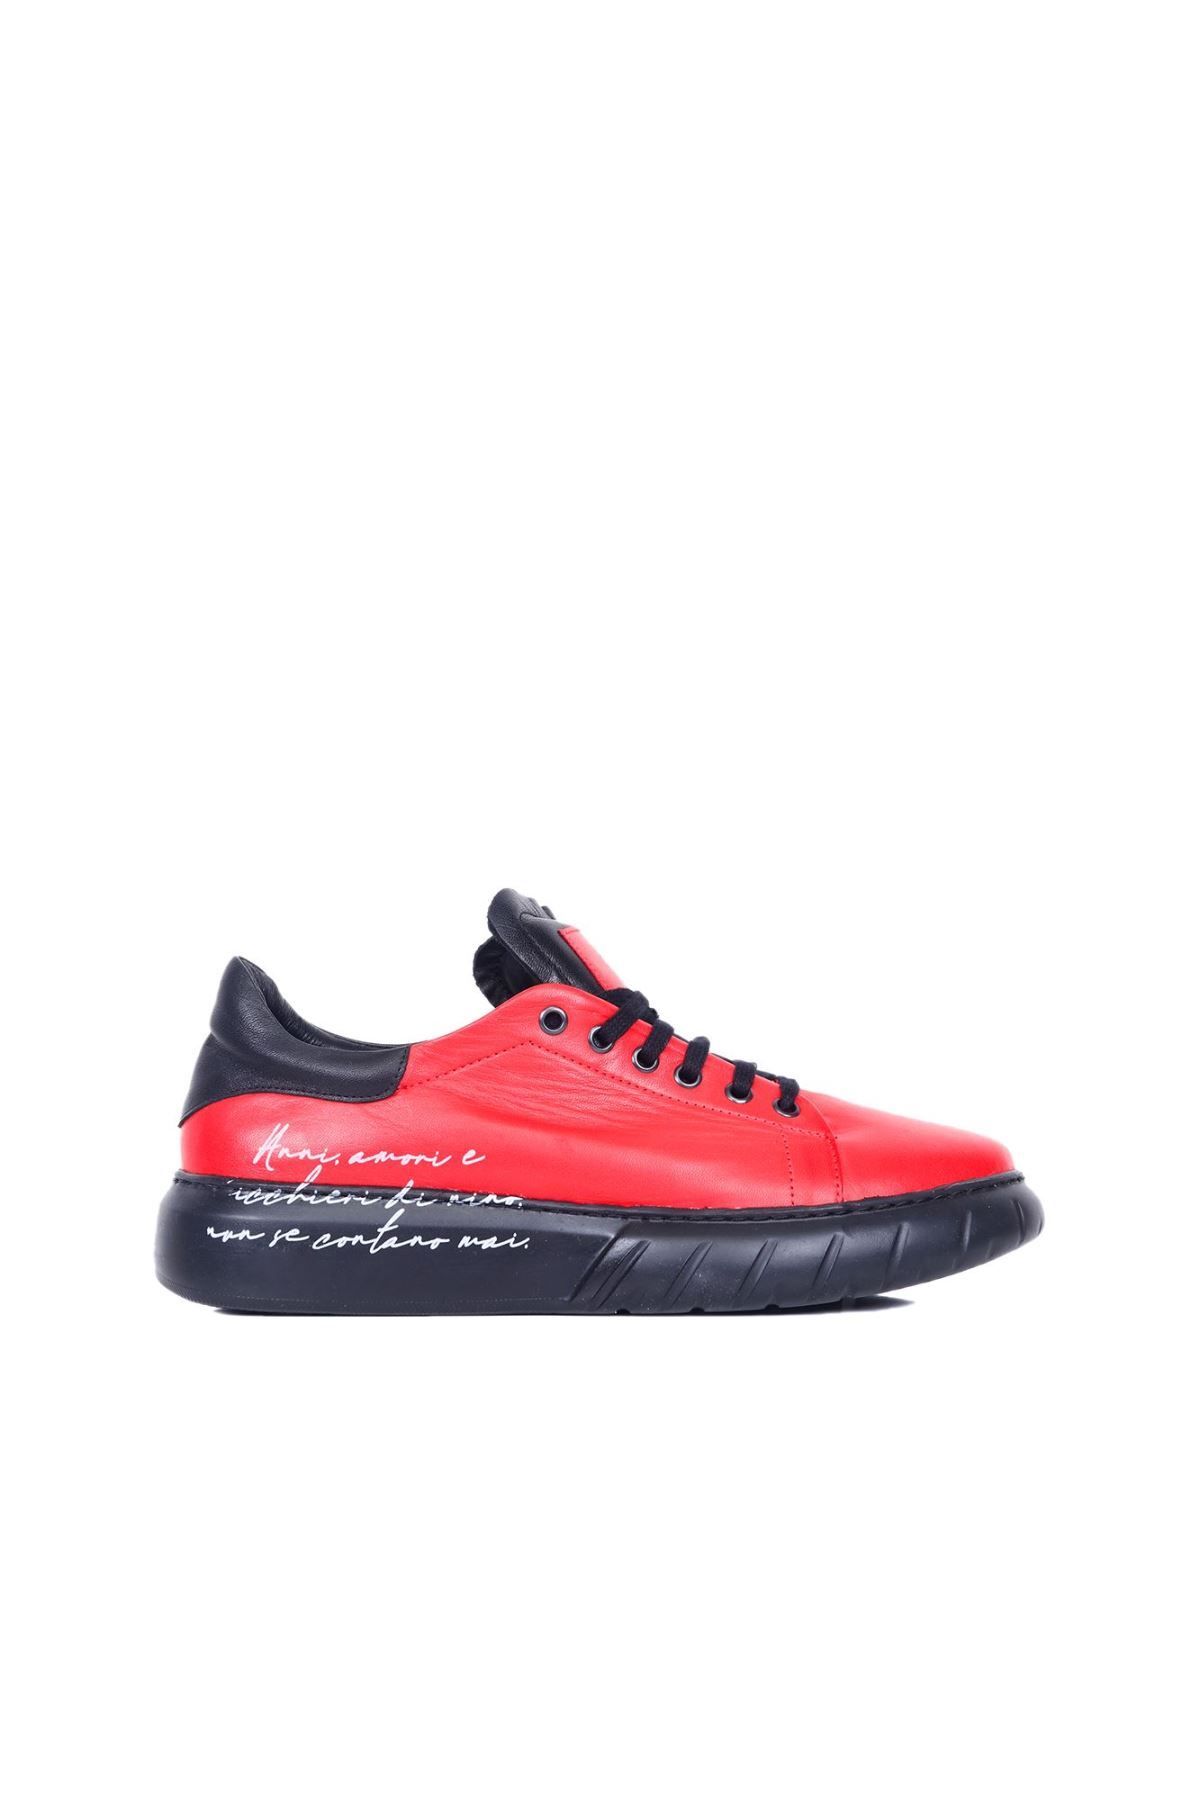 BUENO Shoes Kırmızı B92c03 Erkek Spor Ayakkabı